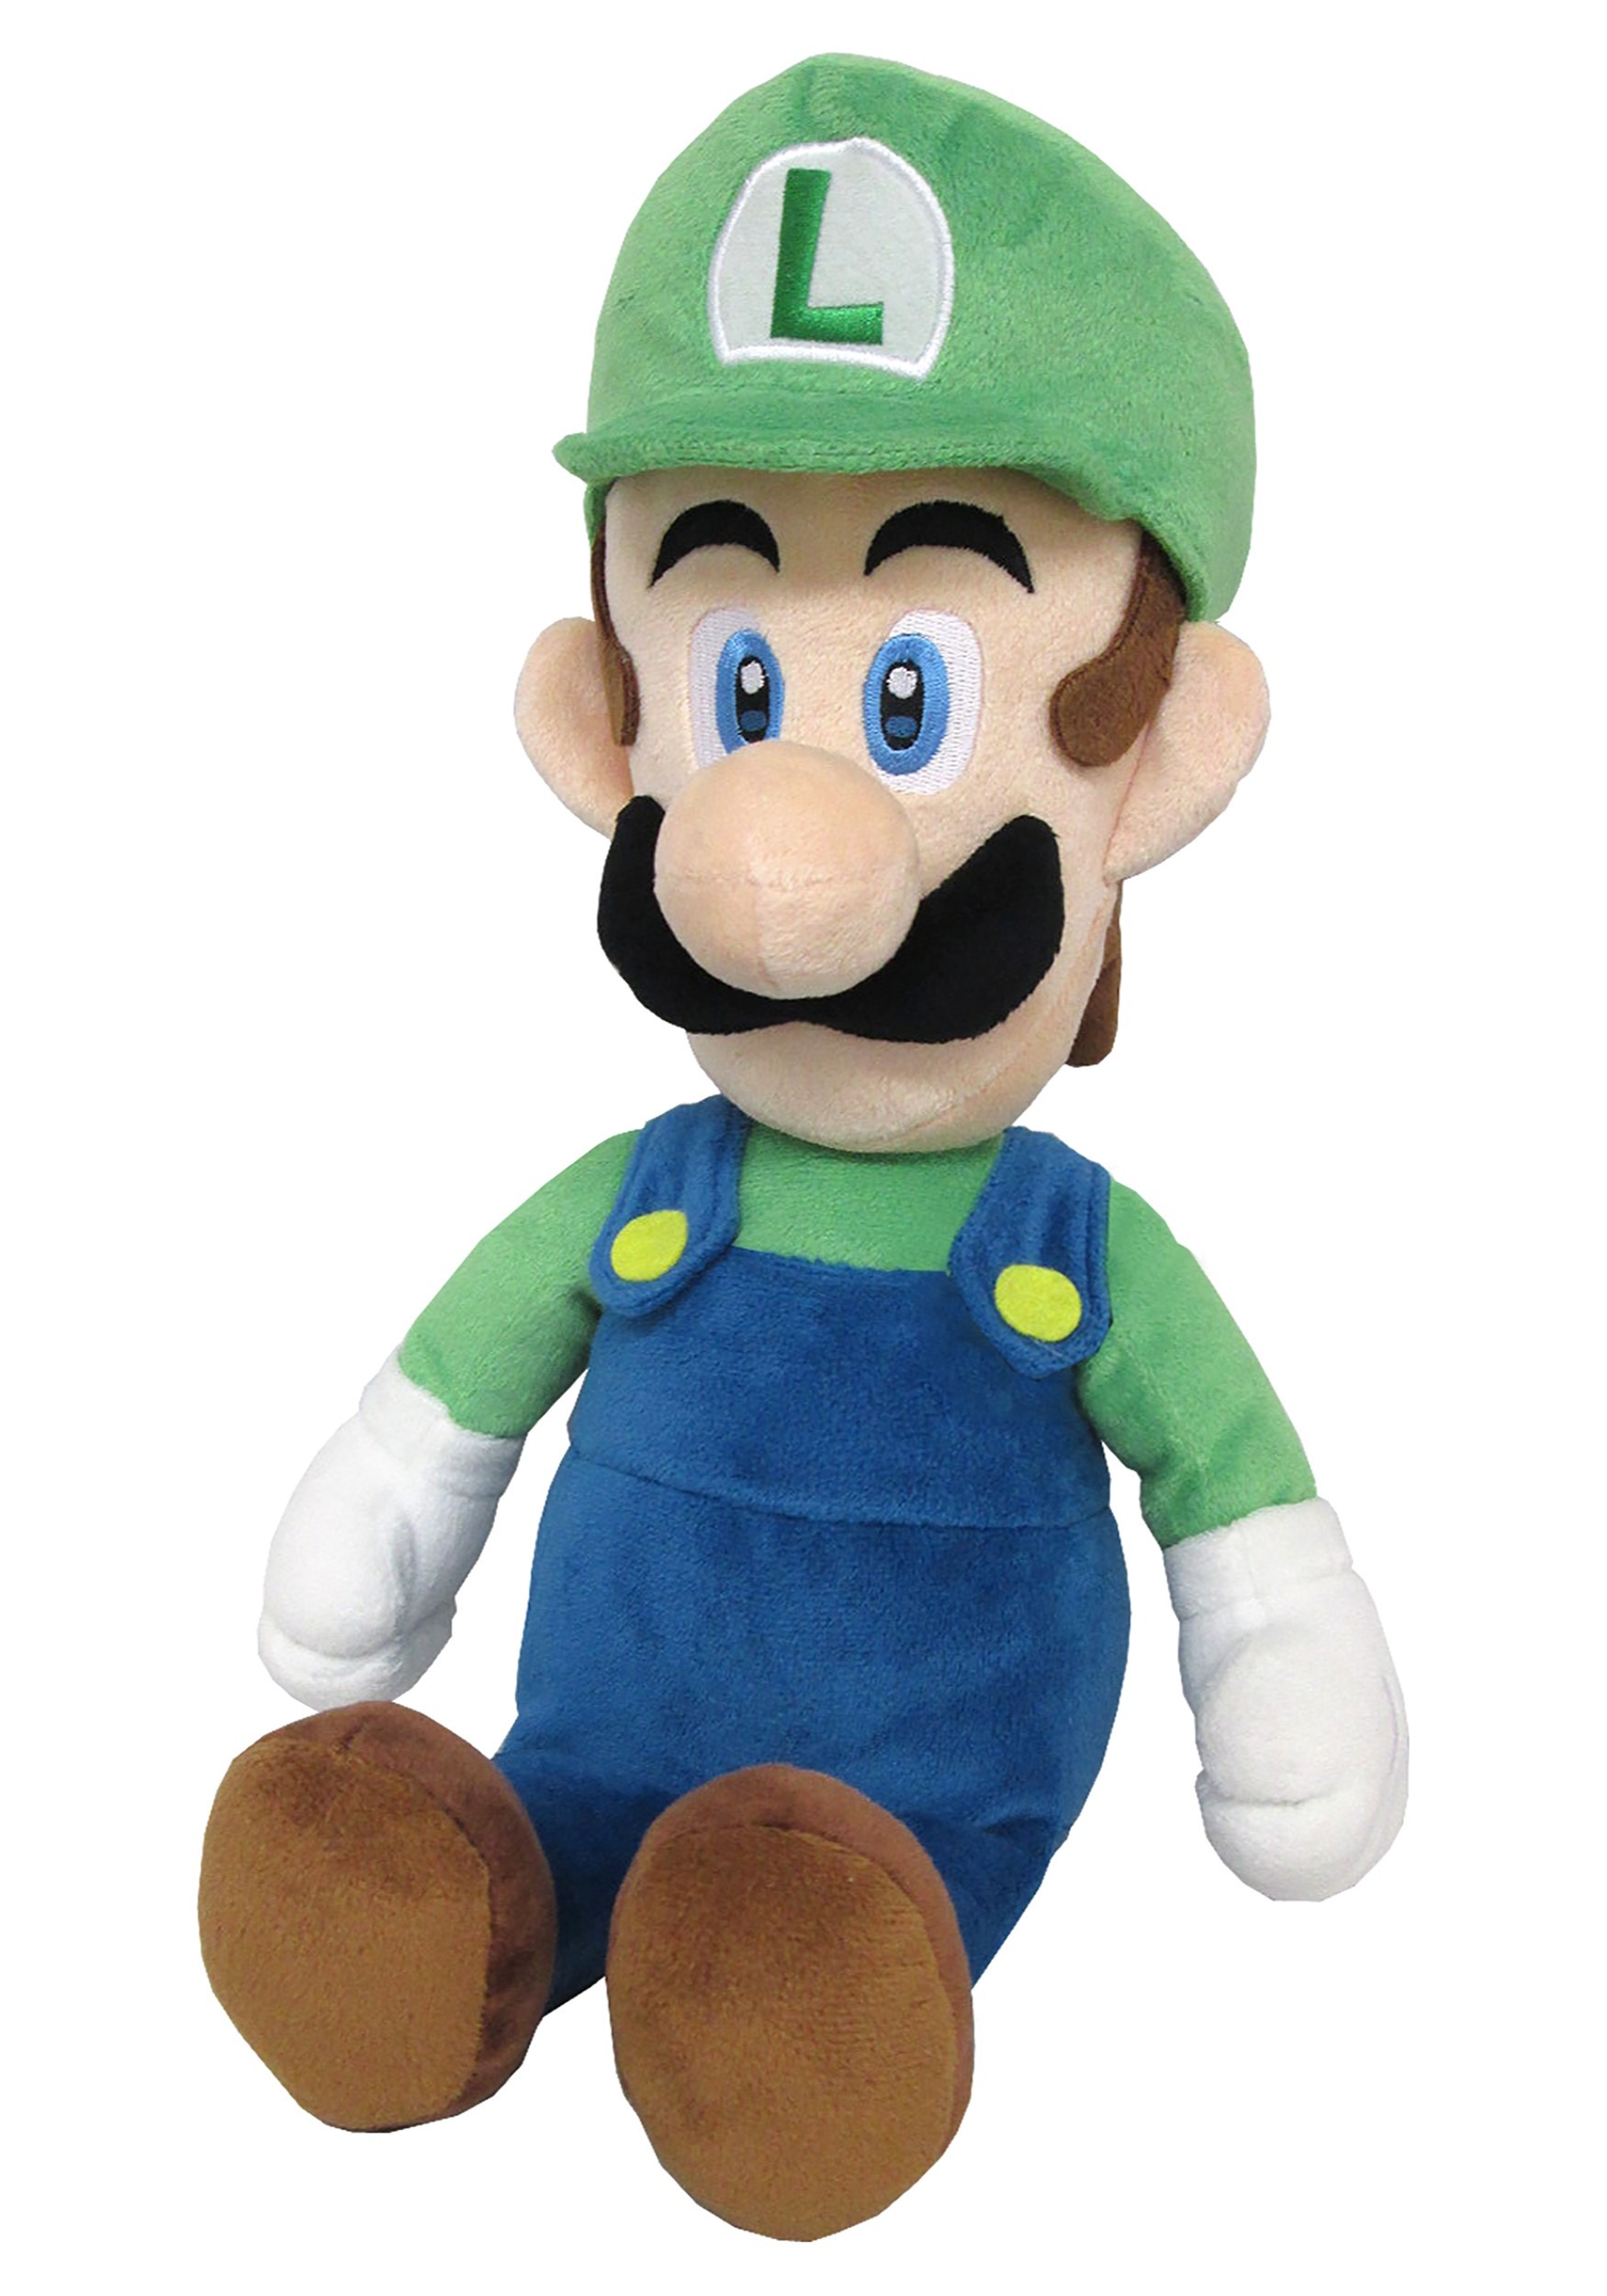 15" Luigi Plush